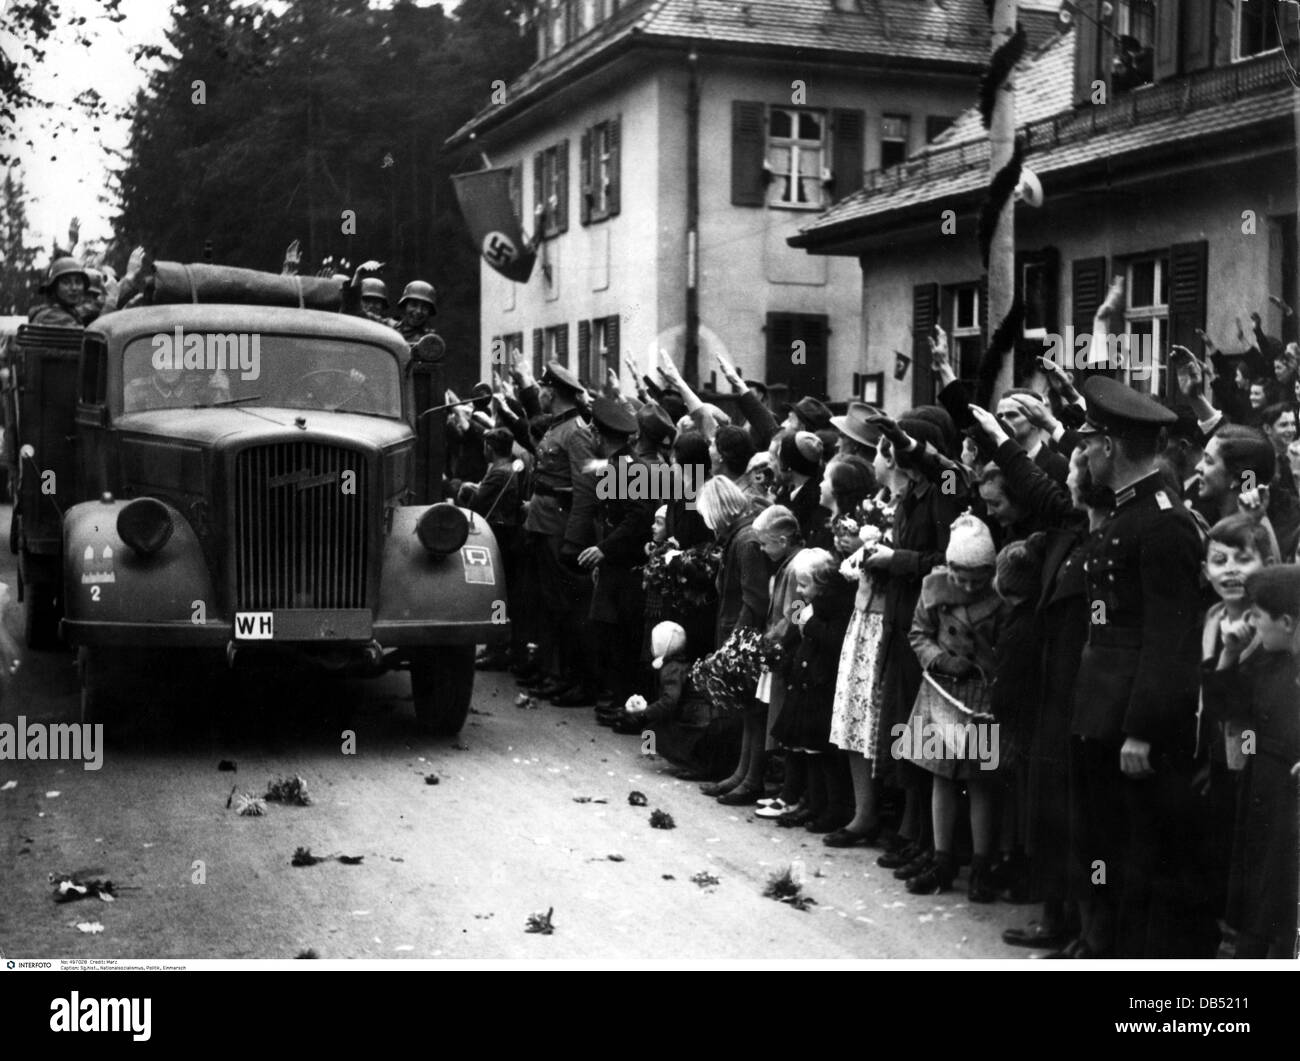 National-socialisme, politique, marchin-dans le Sudetenland, une unité de la Wehrmacht allemande accueille à Wildenau, 1.10.1938, droits additionnels-Clearences-non disponible Banque D'Images